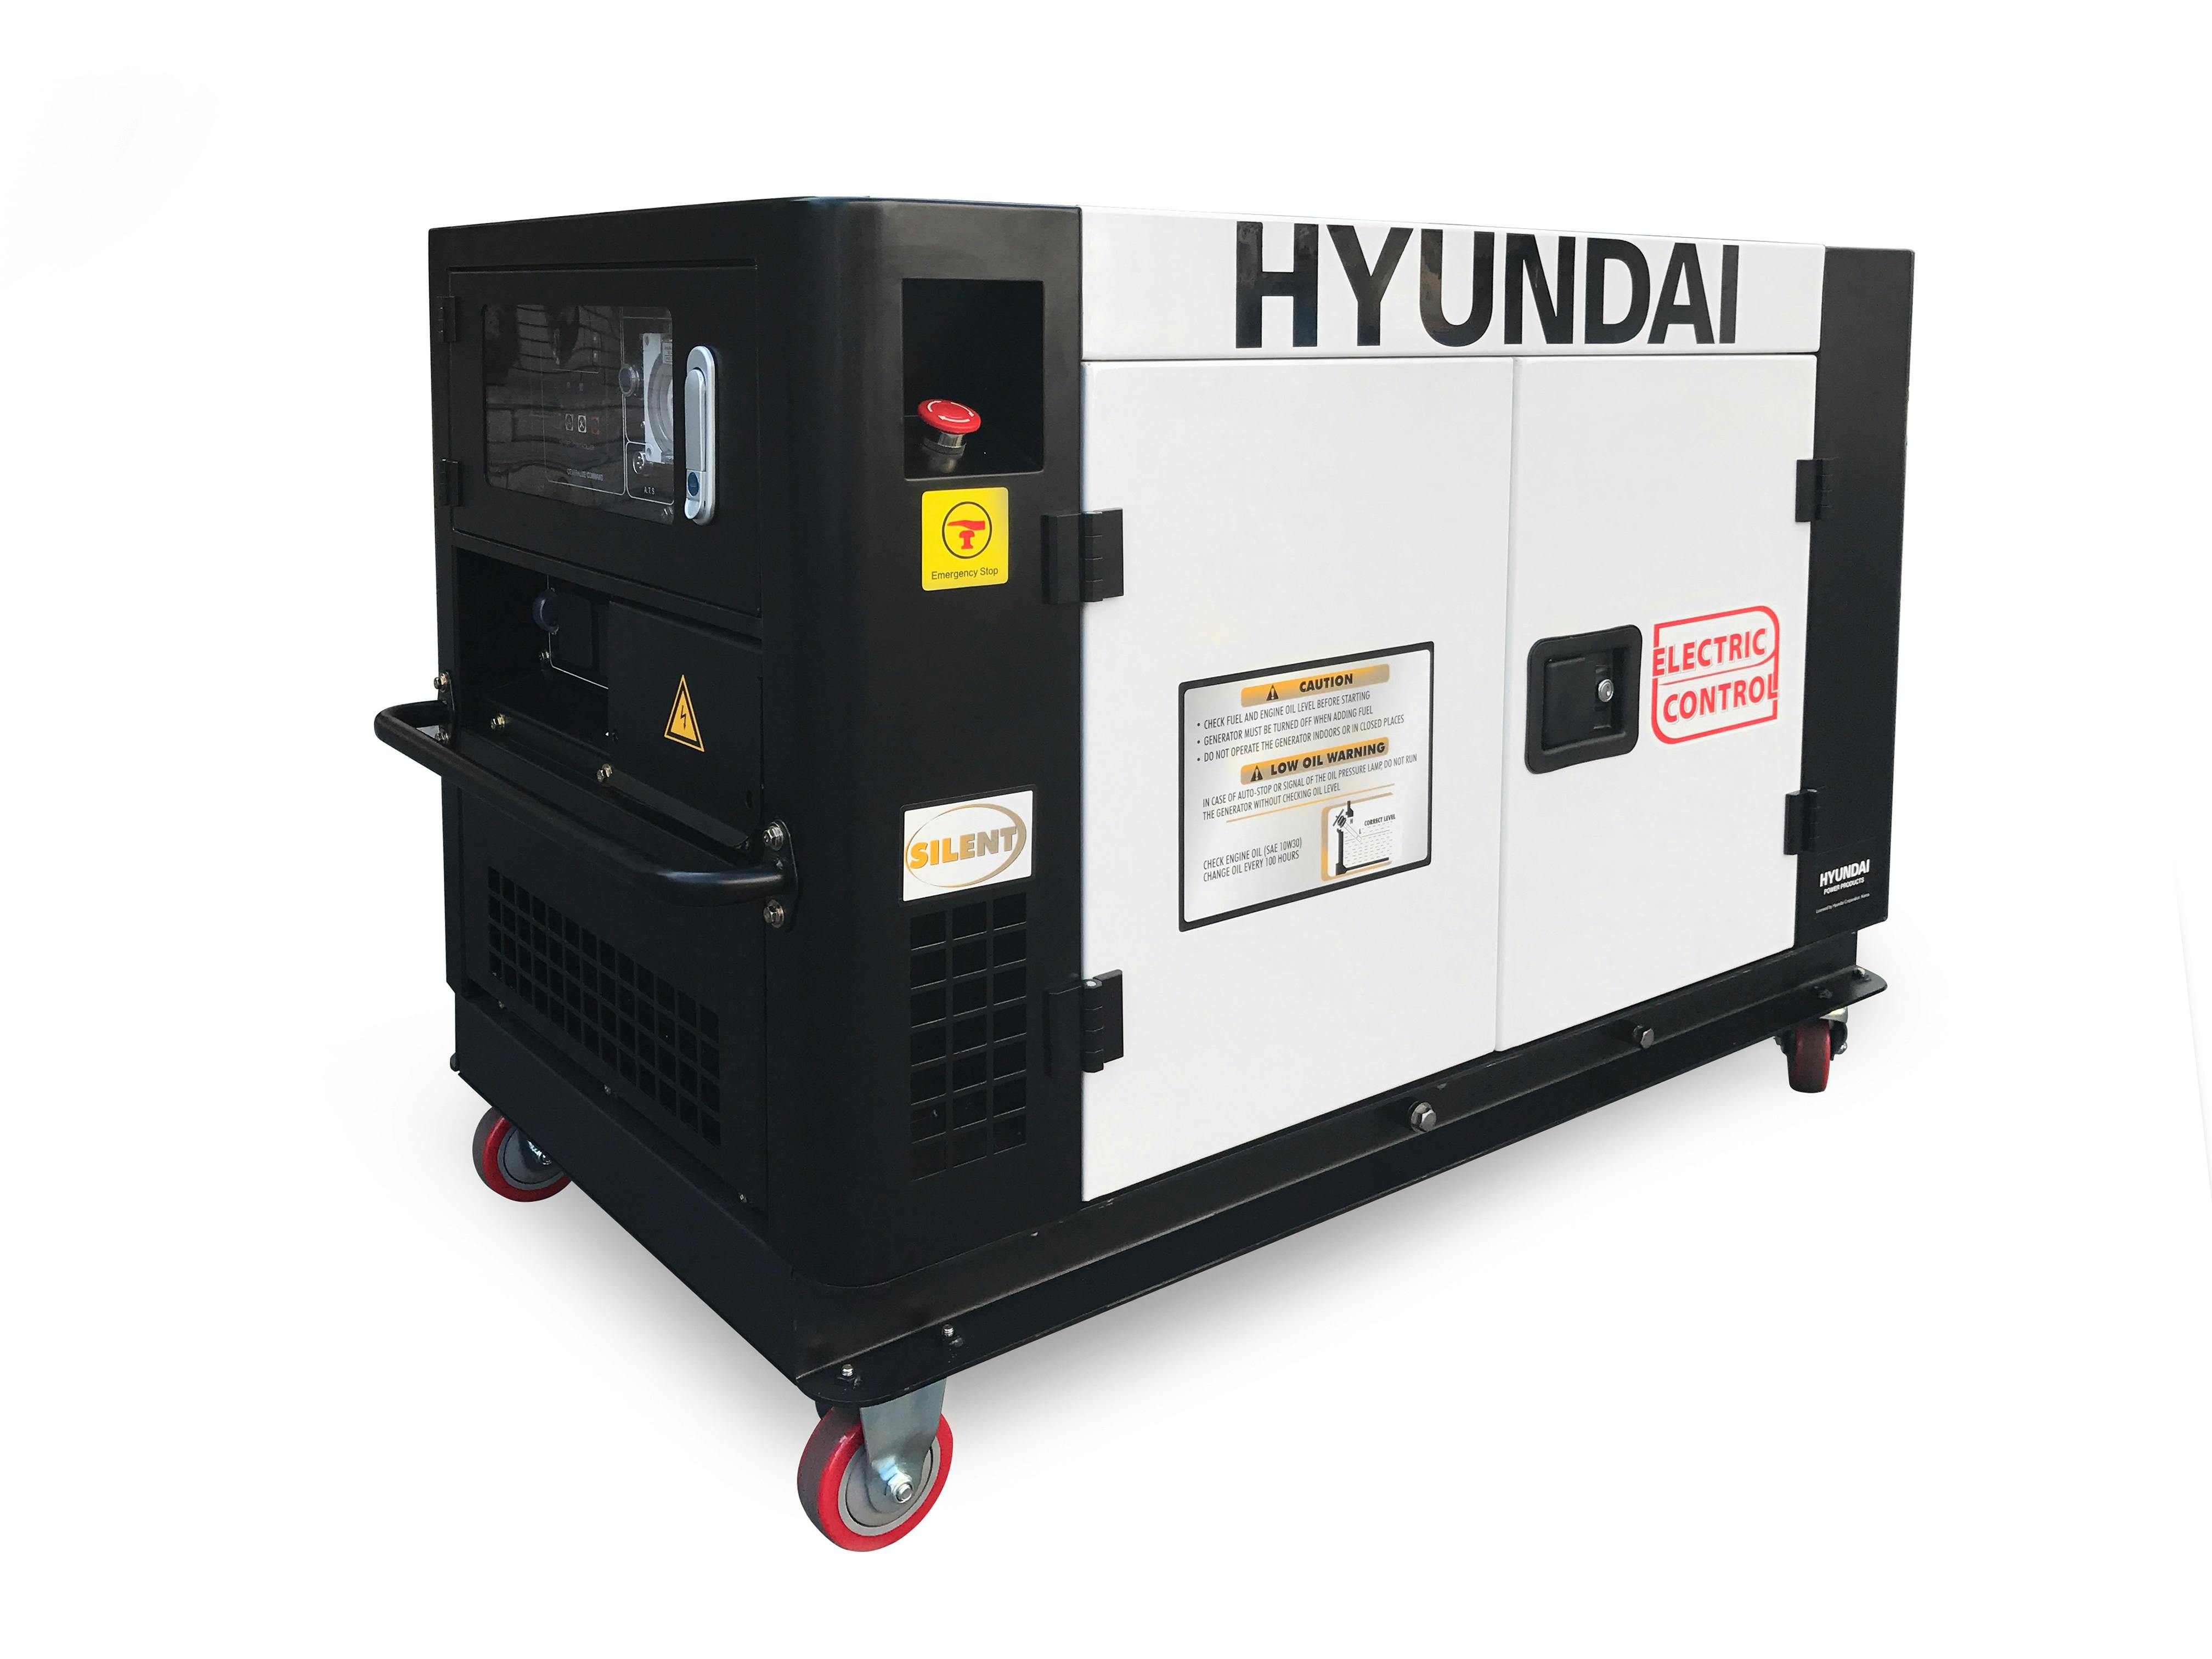 venlige bagværk hellig Hyundai Diesel Silent Generator 9500W 3 Phase - Diesel - Traditional -  Generators - Tools & Hardware at Trade Tested